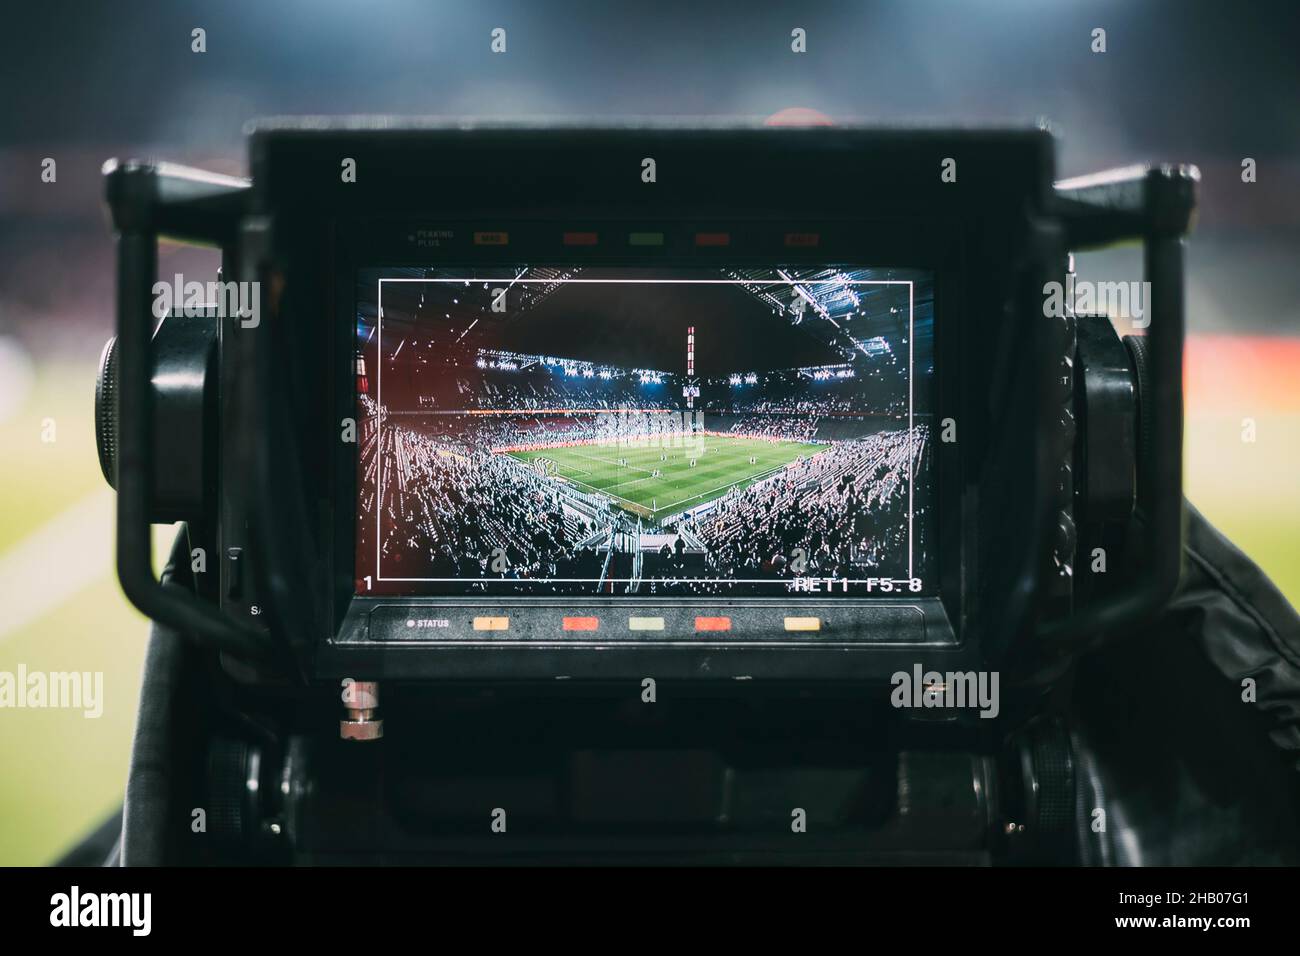 Kšln, RheinEnergieStadion, 10.12.21: Filmkamera hat das Stadion als †bersicht auf dem Bildschirm im Spiel der 1.Bundesliga 1.FC Kšln vs. FC Augsburg. Stock Photo